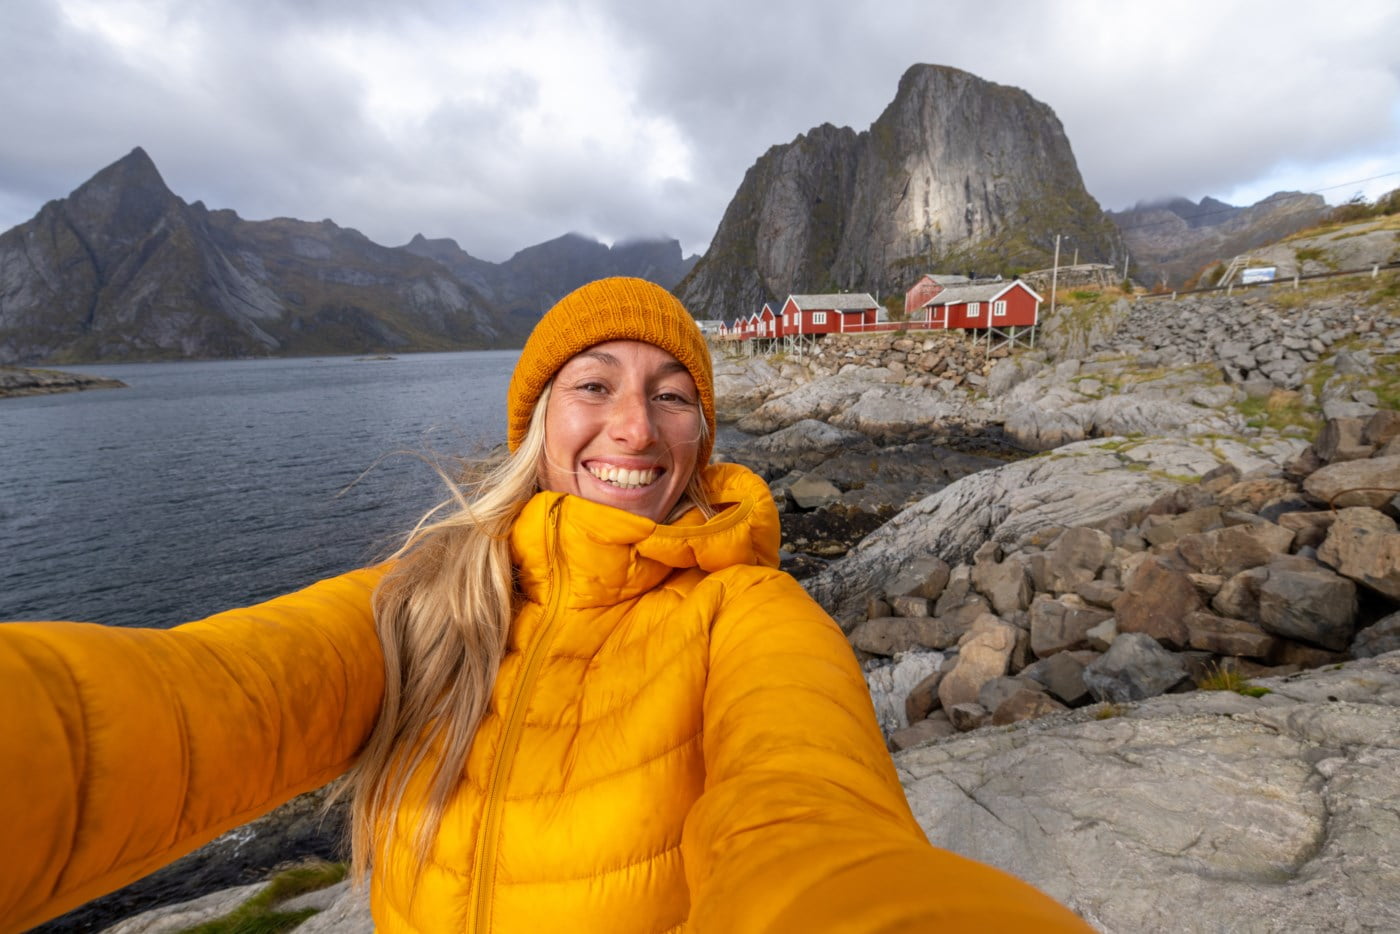 Strålende kvinne i gul jakke tar en selfie med den majestetiske norske kysten og røde hytter i bakgrunnen, illustrerer varme og glede i enkelheten ved livet.